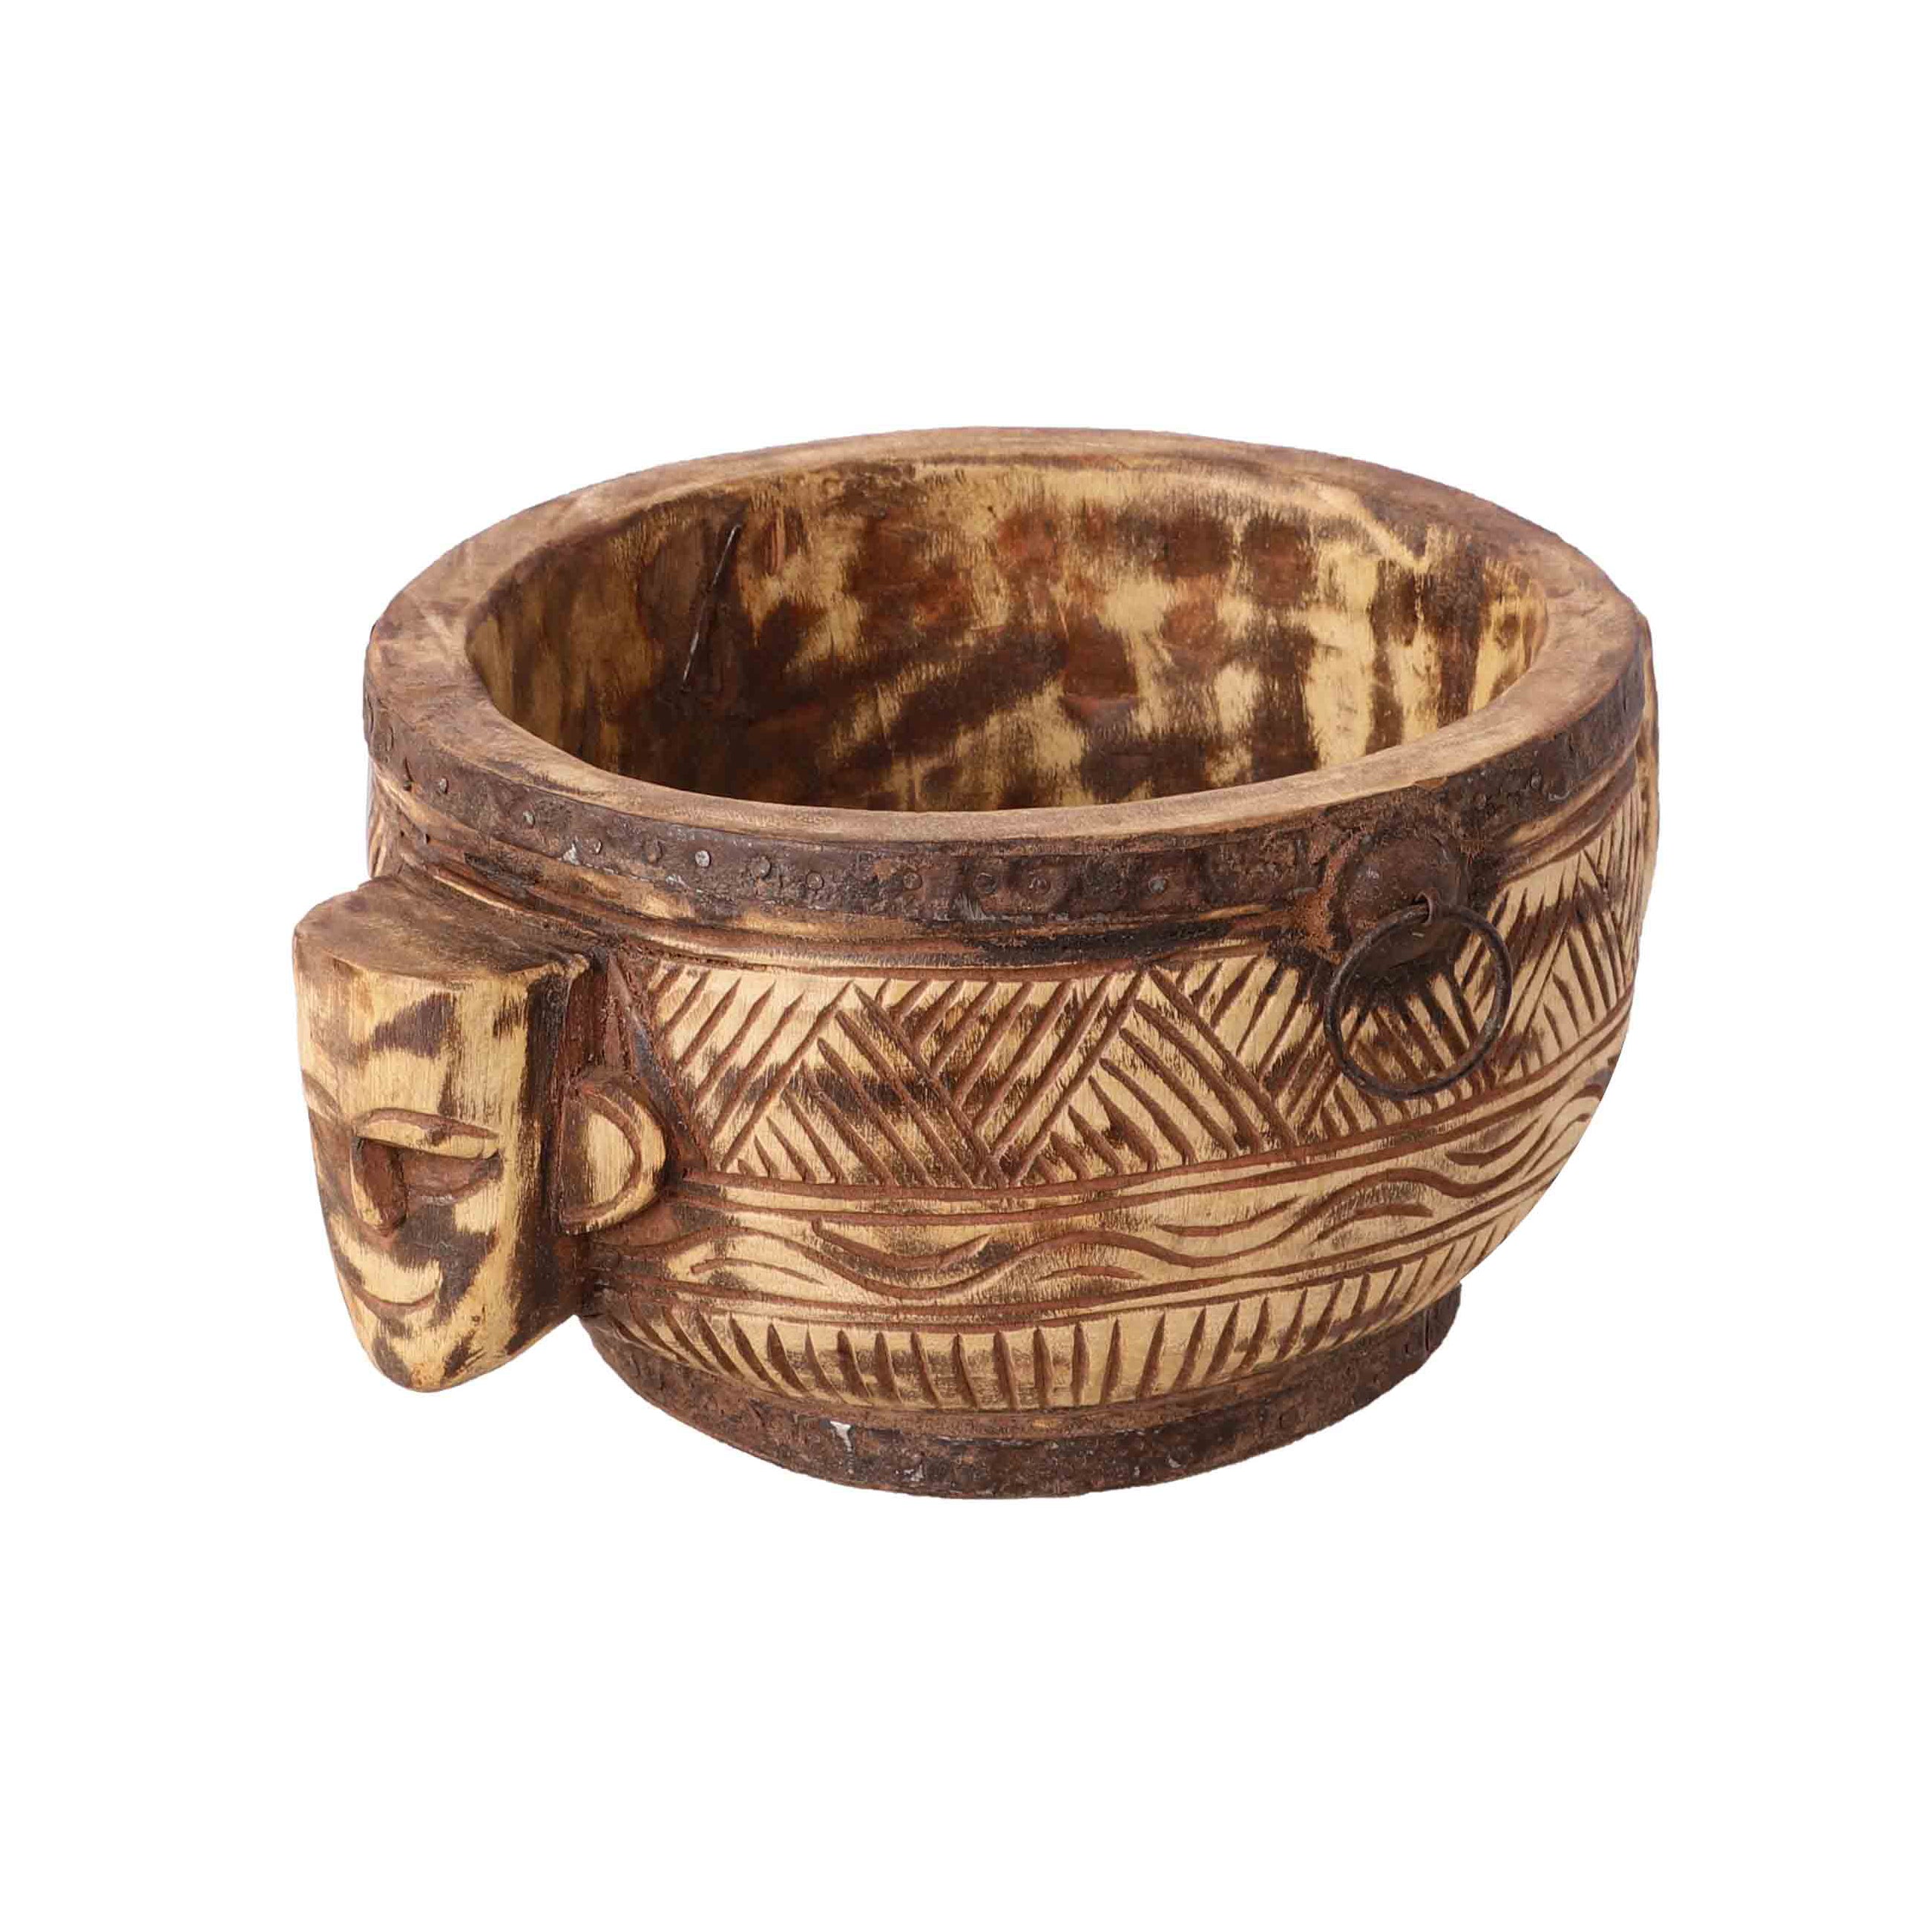 Antique Carved Bowl (Natural)